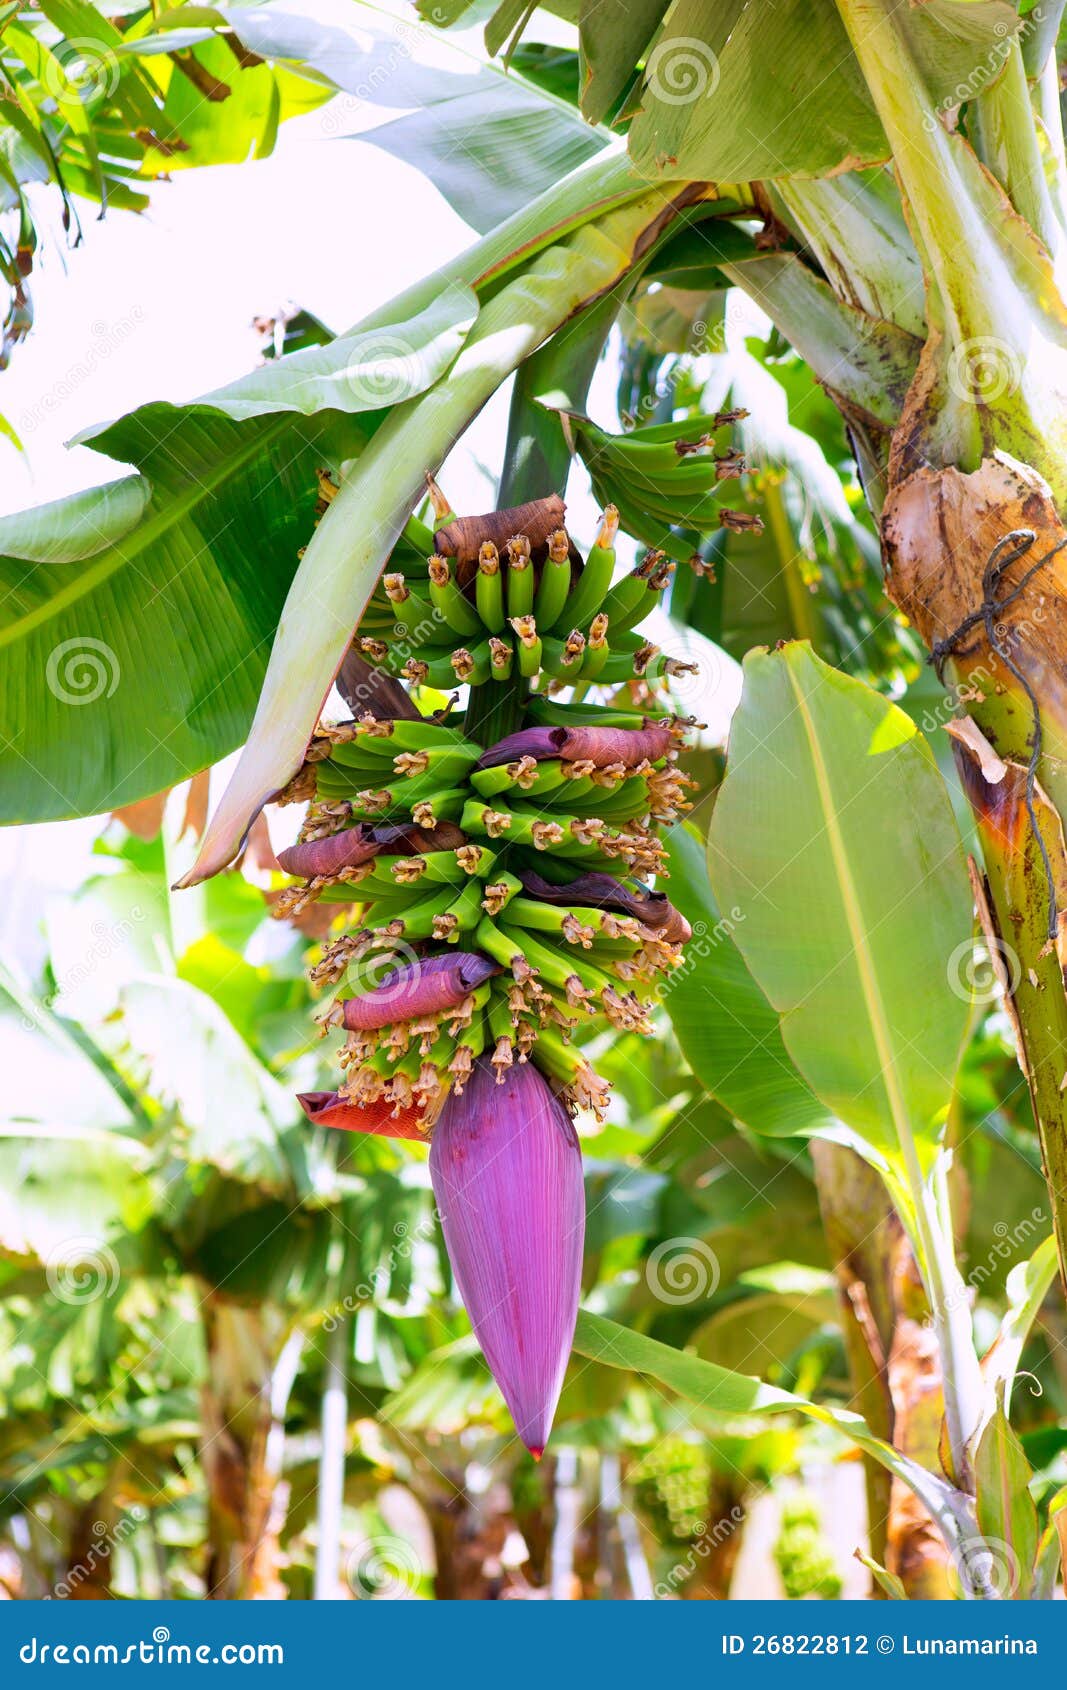 canarian banana plantation platano in la palma